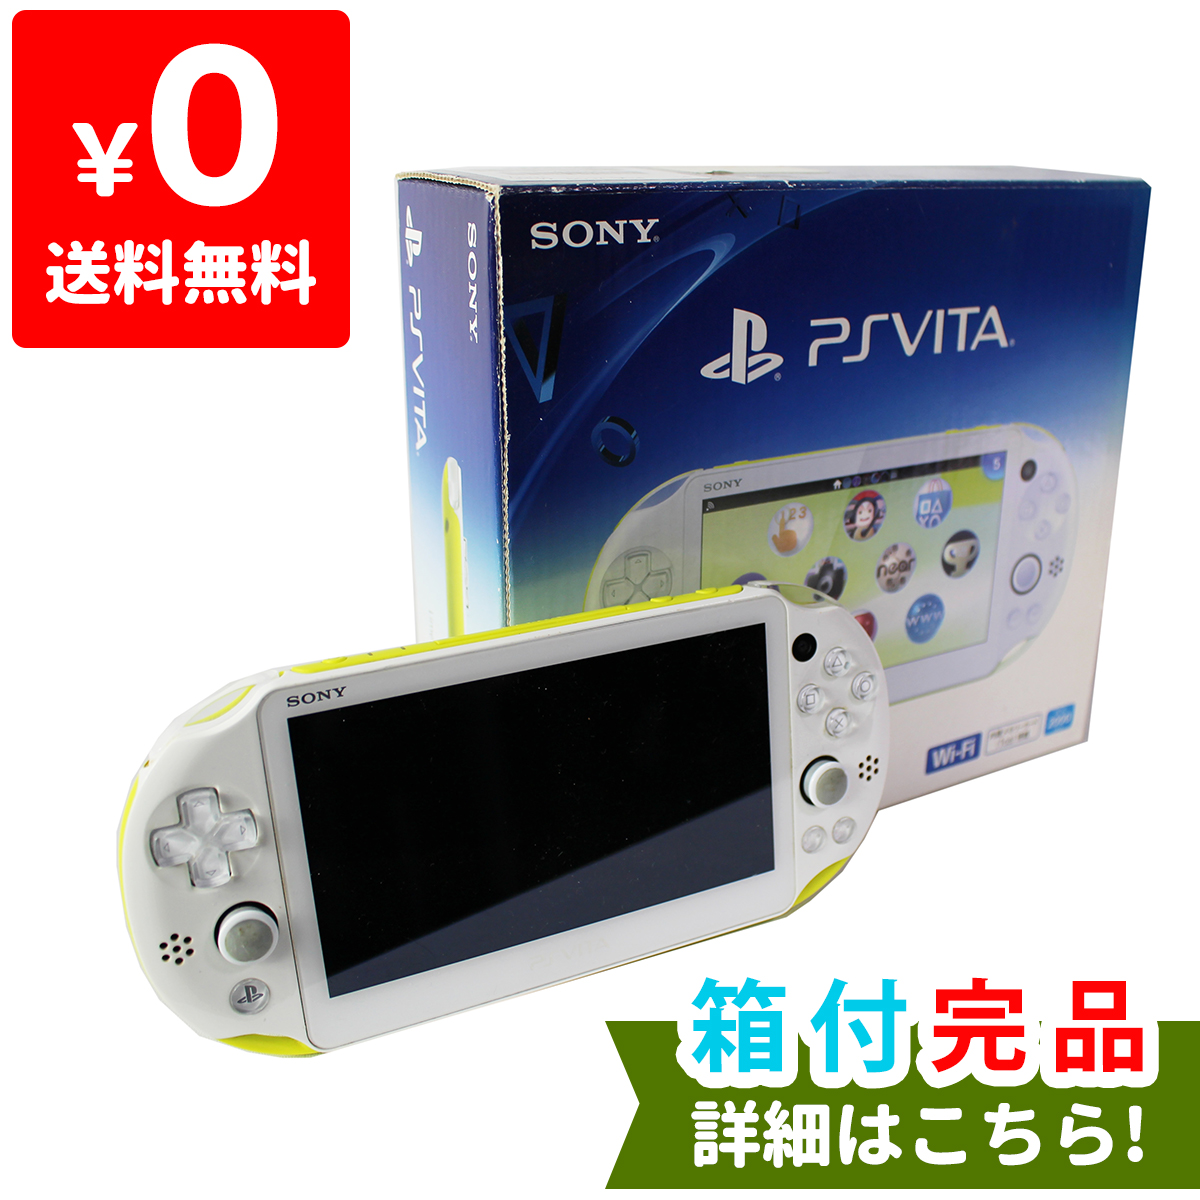 【楽天市場】PSVita 2000 PlayStation Vita Wi-Fiモデル ライム